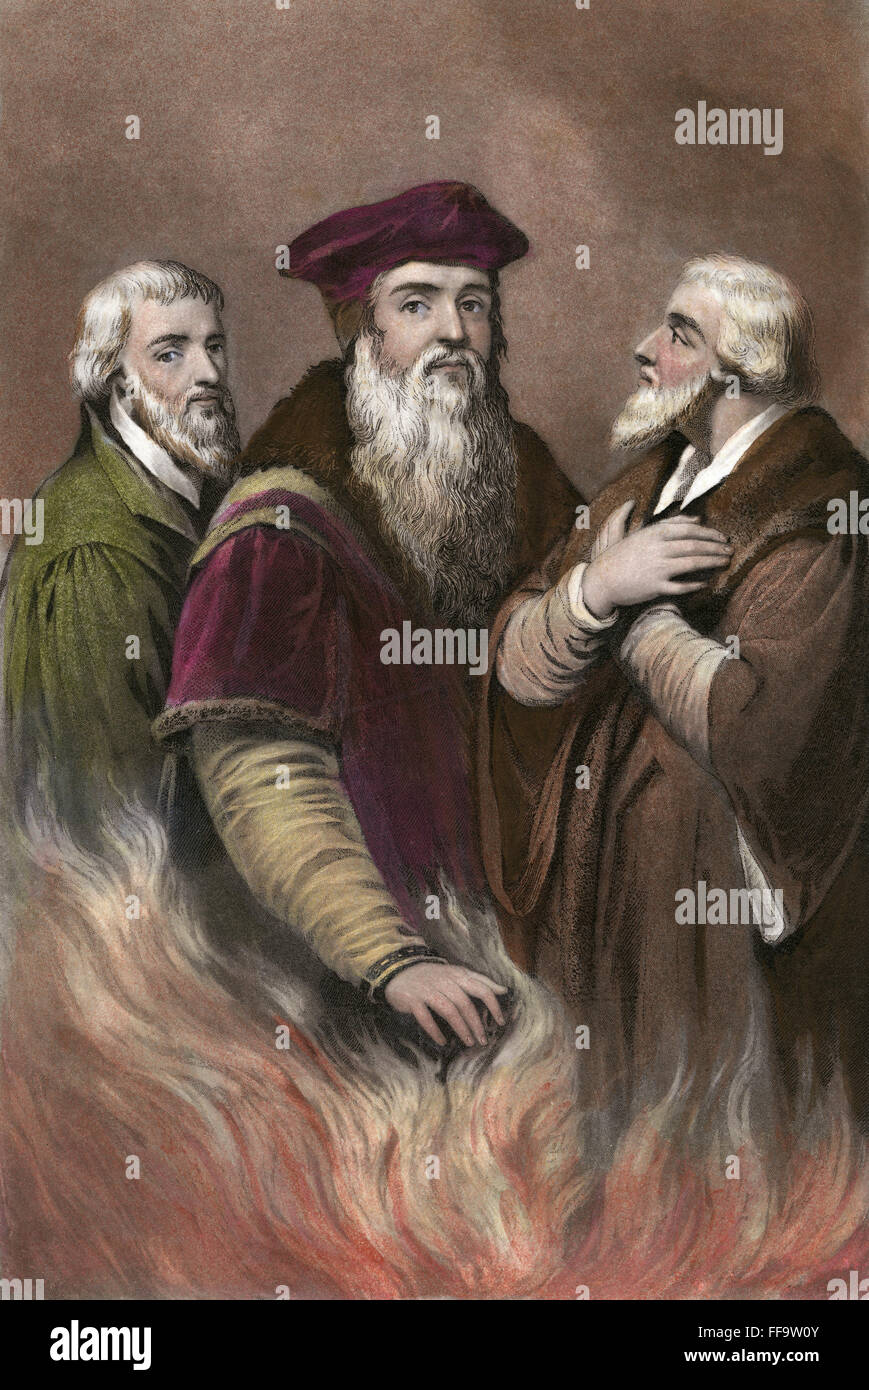 ENGLISCHE REFORMER. /nFrom von links nach rechts: Nicholas Ridley (1500?-1555), Thomas Cranmer (1489-1556) und Hugh Latimer (c1485-1555). Schabkunst von John Sartain nach H. Lejune, 19. Jahrhundert. Stockfoto